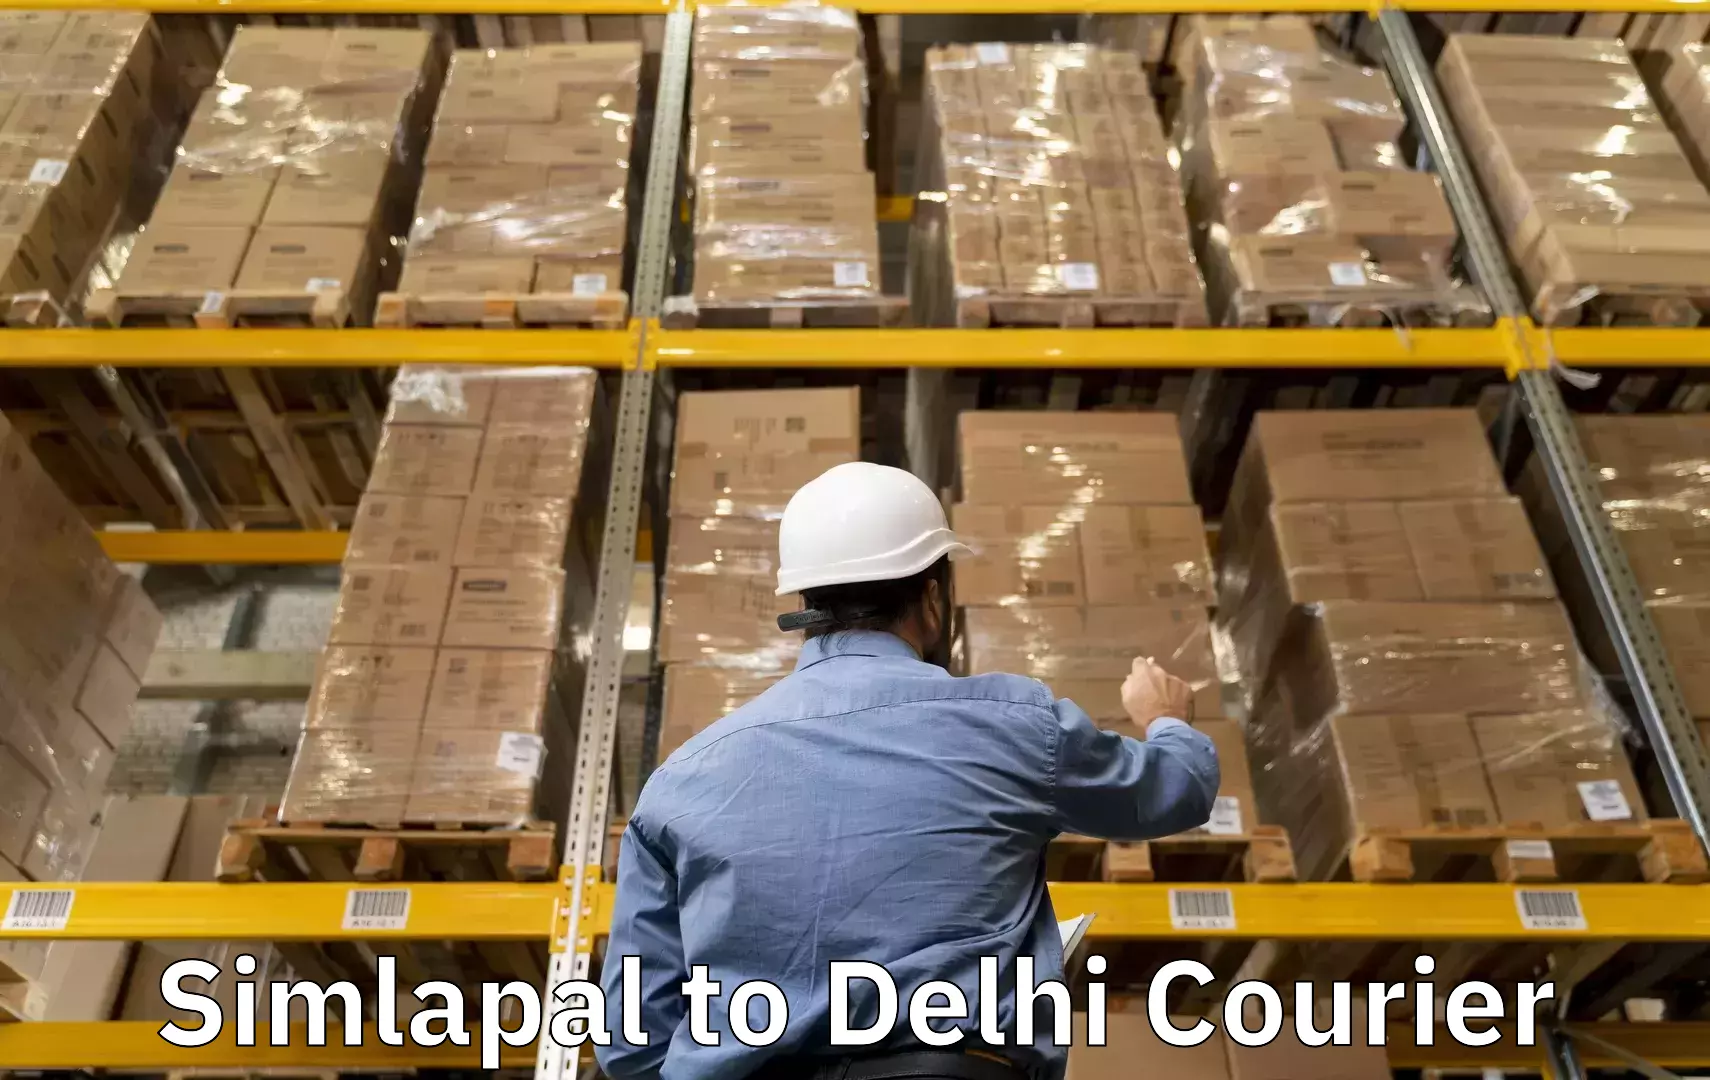 Door-to-door baggage service Simlapal to NIT Delhi